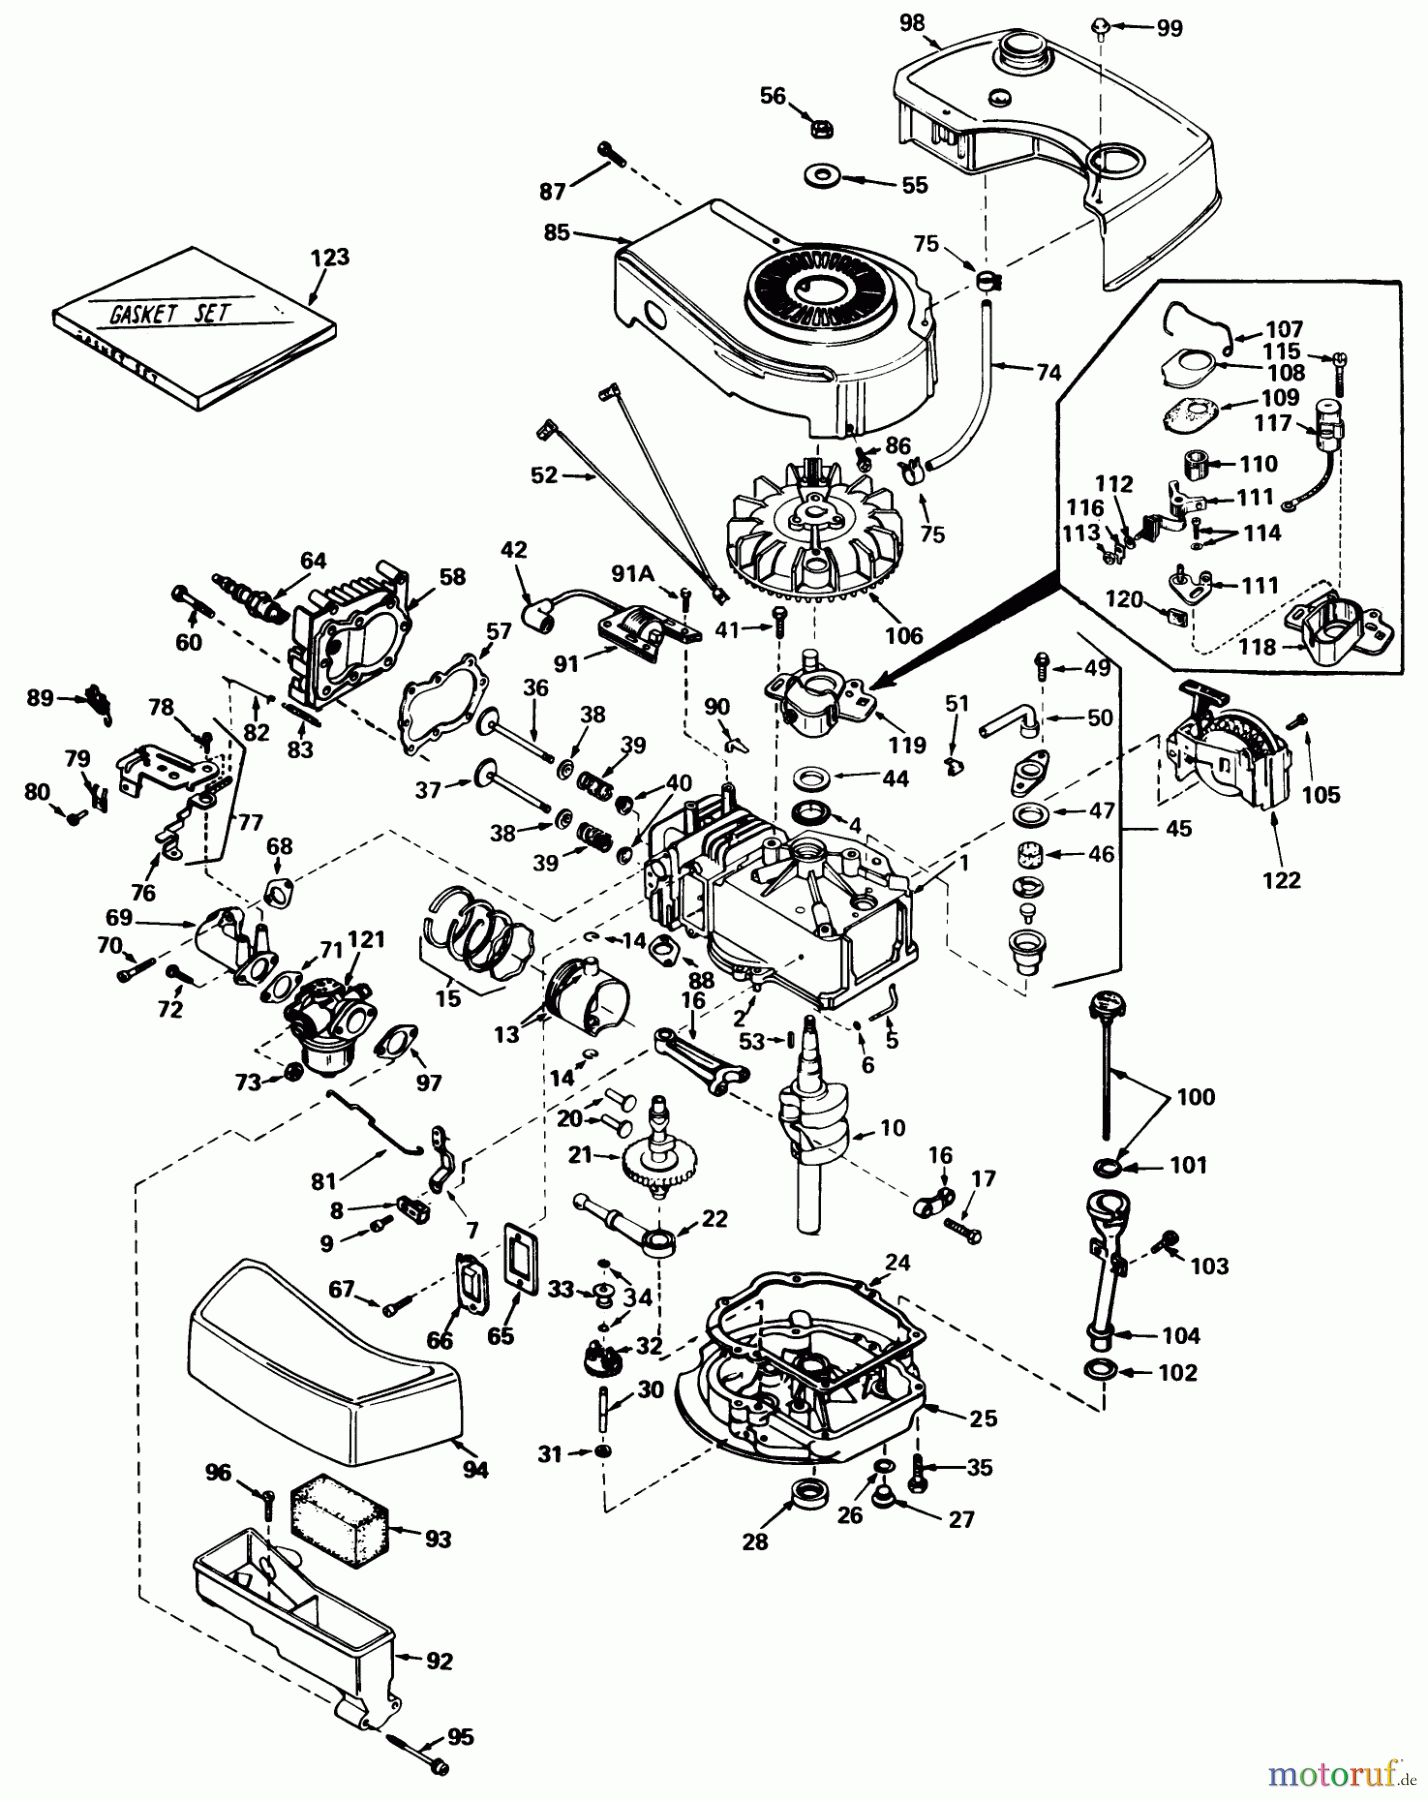  Toro Neu Mowers, Walk-Behind Seite 1 20775 - Toro Lawnmower, 1979 (9000001-9999999) ENGINE TECUMSEH MODEL NO. TNT-100-10049C